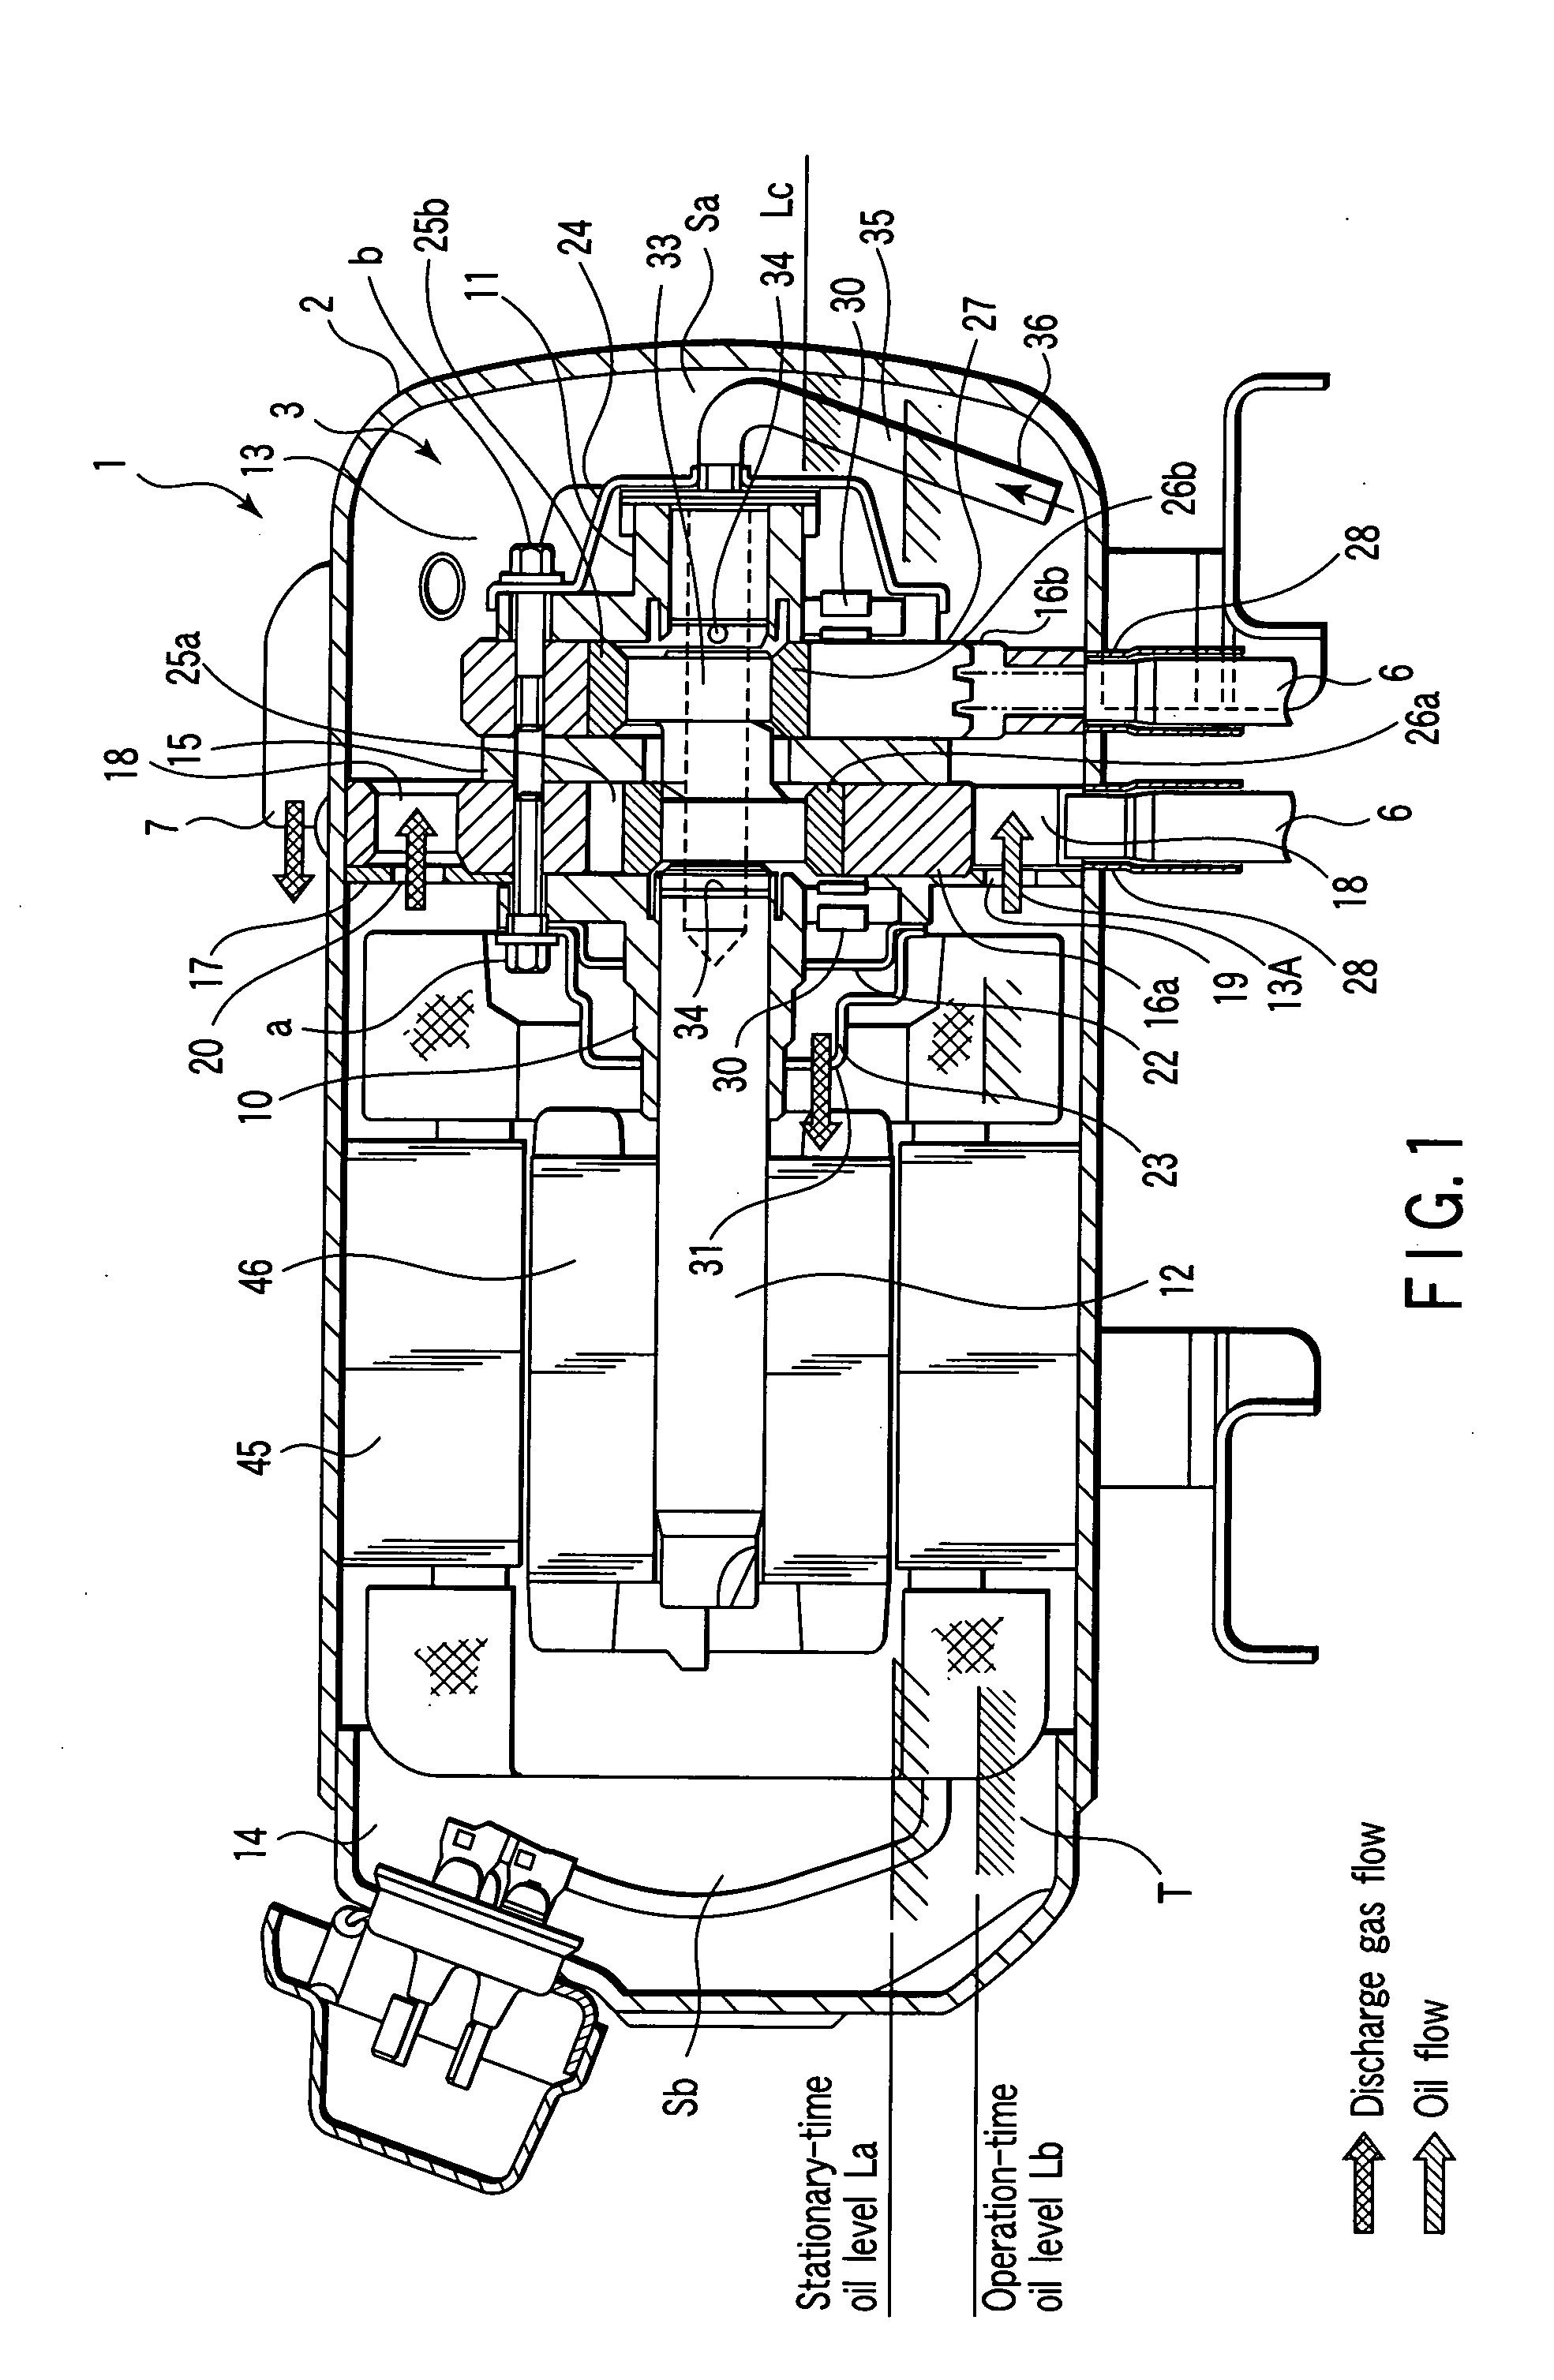 Horizontal rotary compressor